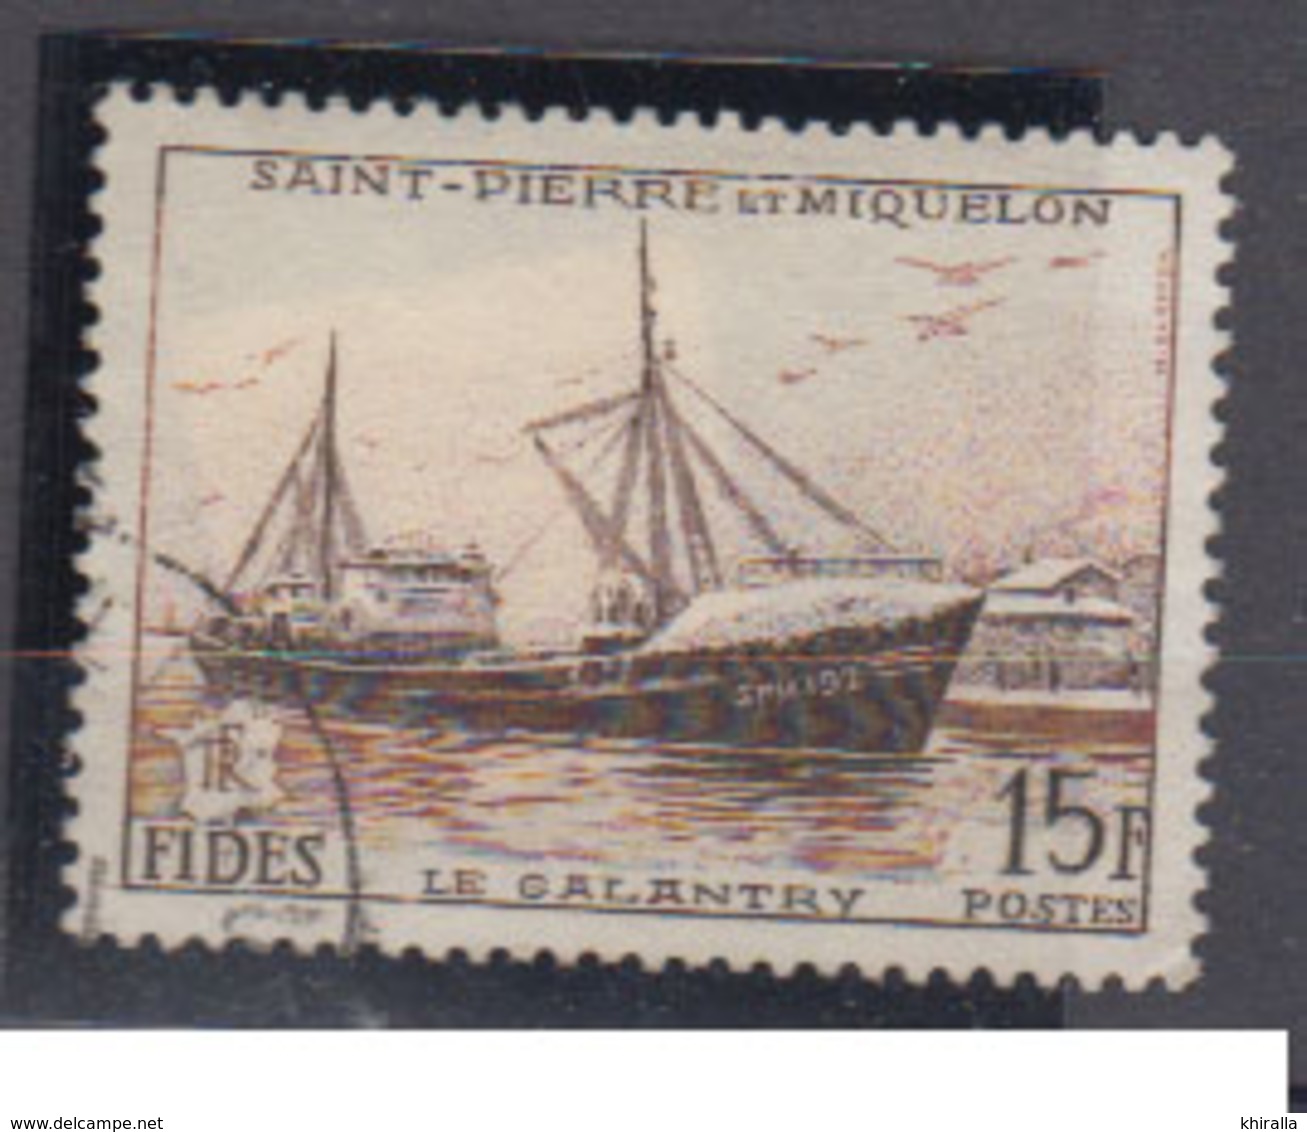 St. Pierre Et Miquelo      1956               N ° 362           COTE       4 € 00           ( E 205 ) - Oblitérés